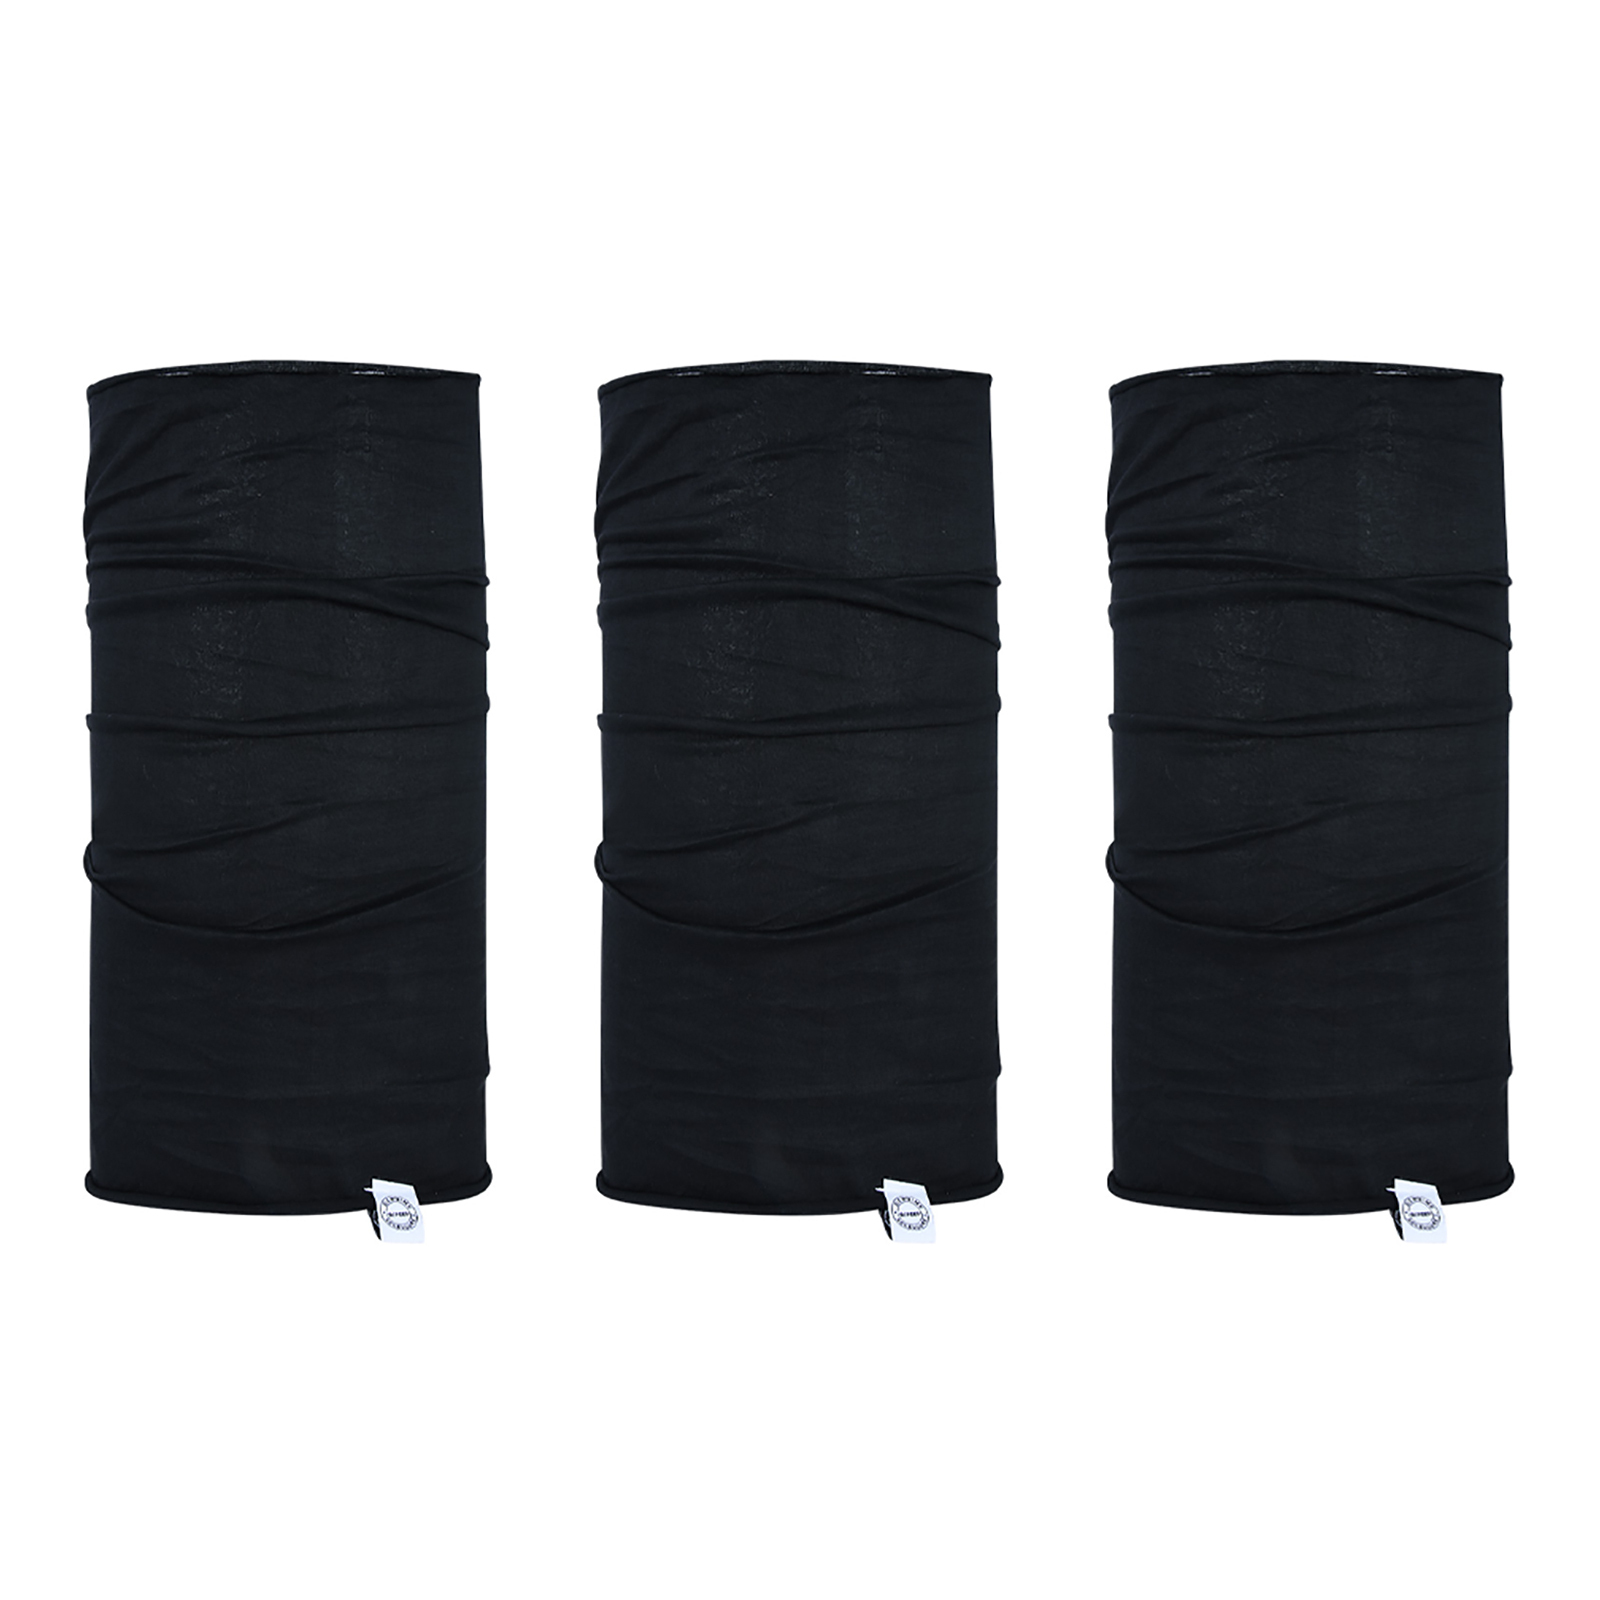 Oxford Comfy neck sock - Black (3 Pack)